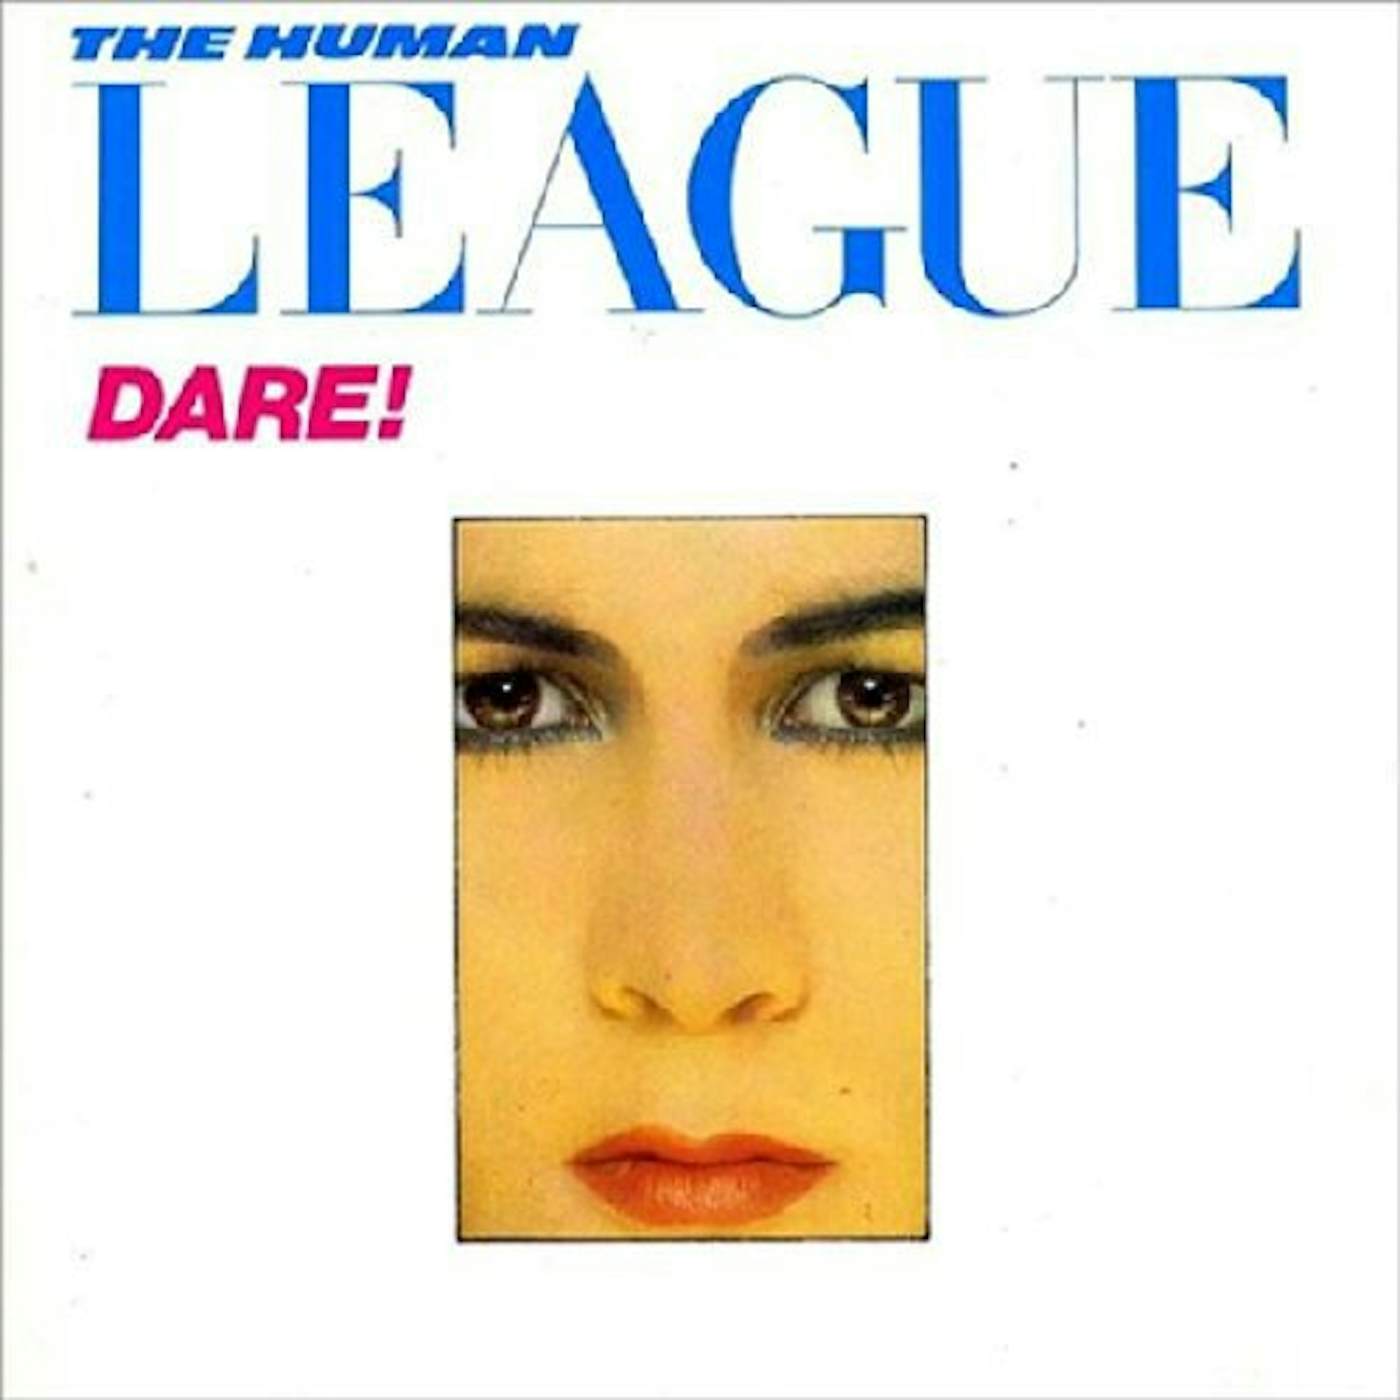 The Human League Dare Vinyl Record